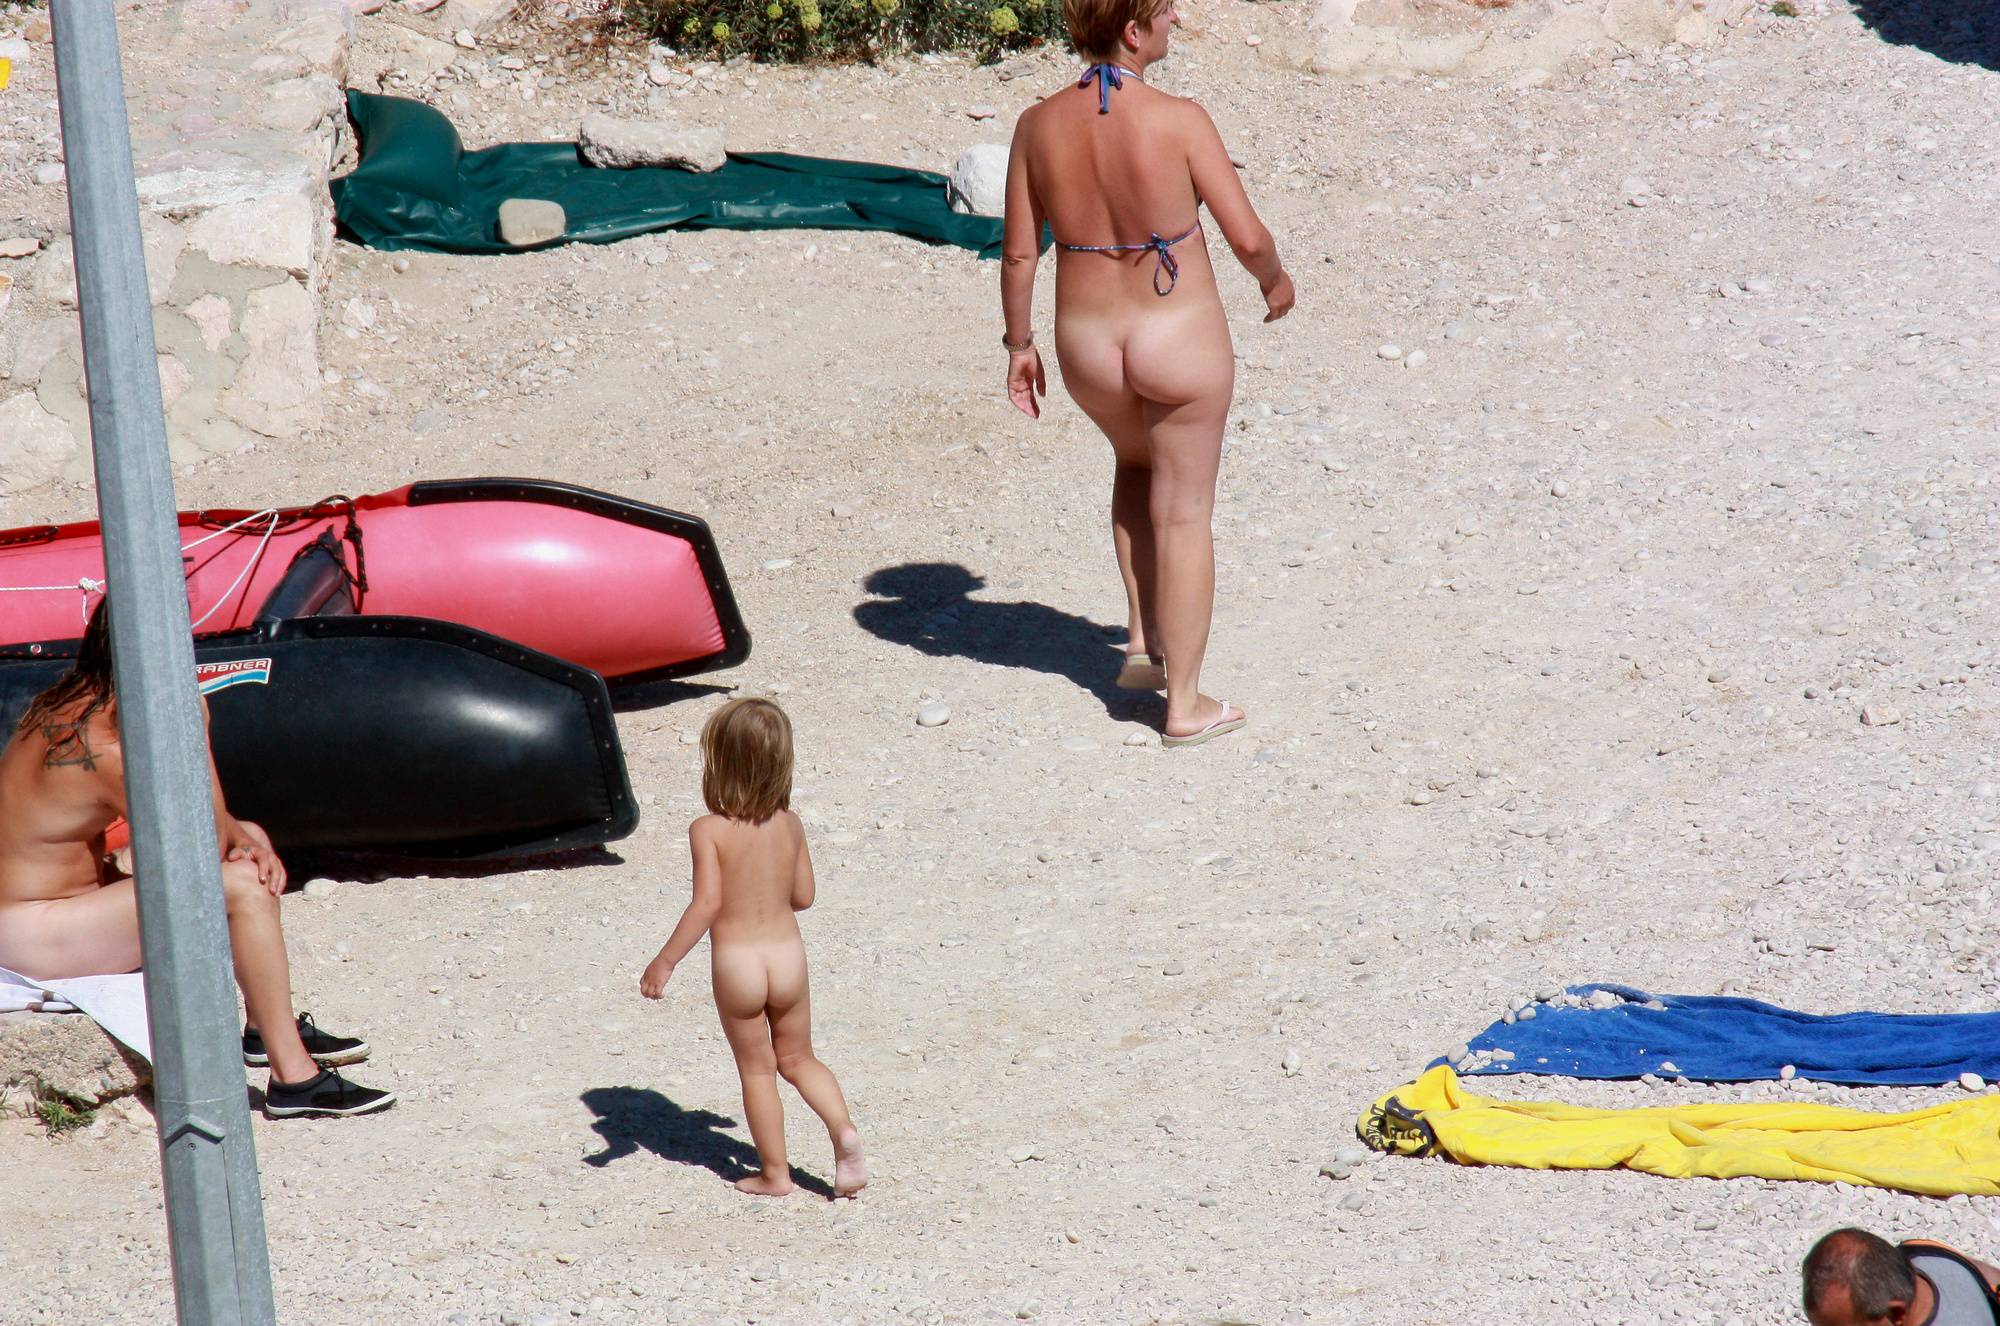 Purenudism Photos-Nudist Child Walk-Around - 2